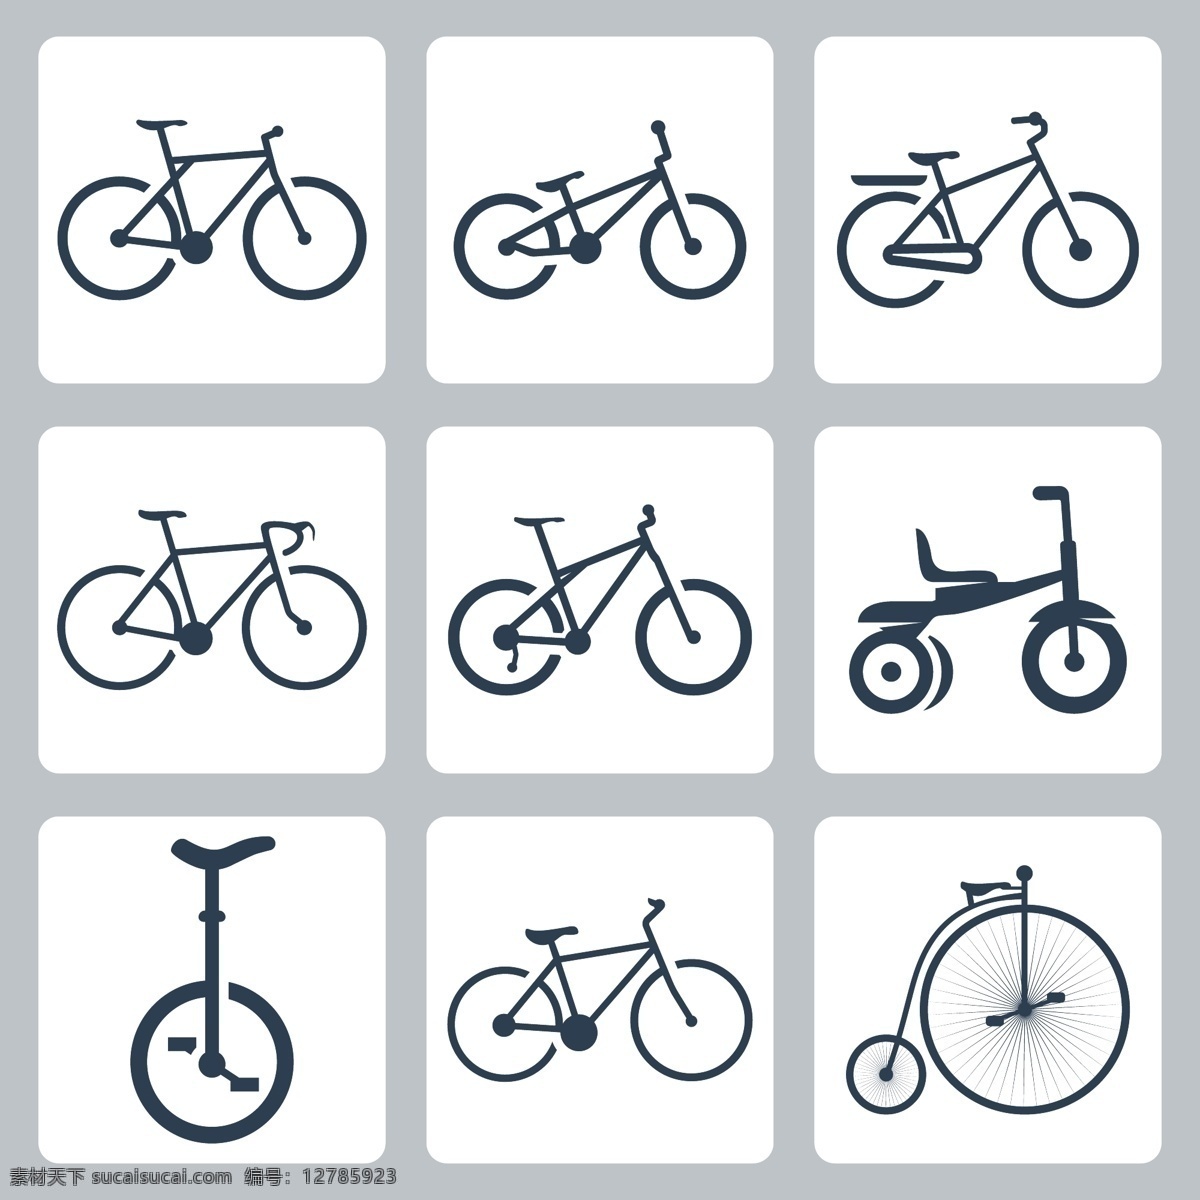 各种 自行车 图标 自行车主题 标志图标 矢量素材 白色